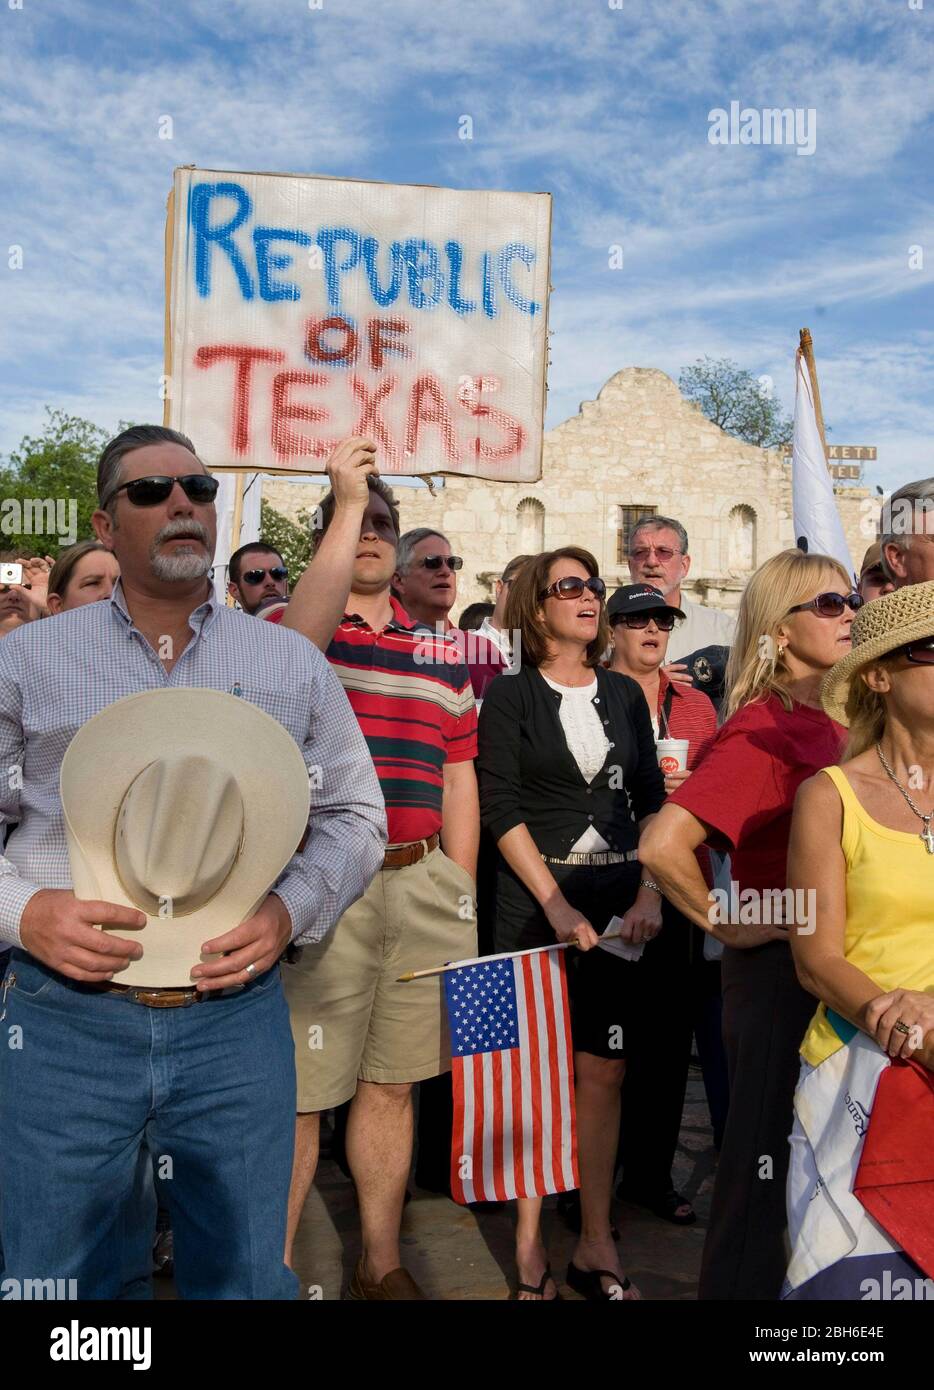 San Antonio, Texas 15 avril 2009: Quelques-uns des milliers de Texans qui se sont réunis en face de l'Alamo dans le centre de San Antonio pour un "Tea Party" protestant contre les renflouements fédéraux et les politiques économiques et d'immigration du président Obama. ©Bob Daemmrich Banque D'Images